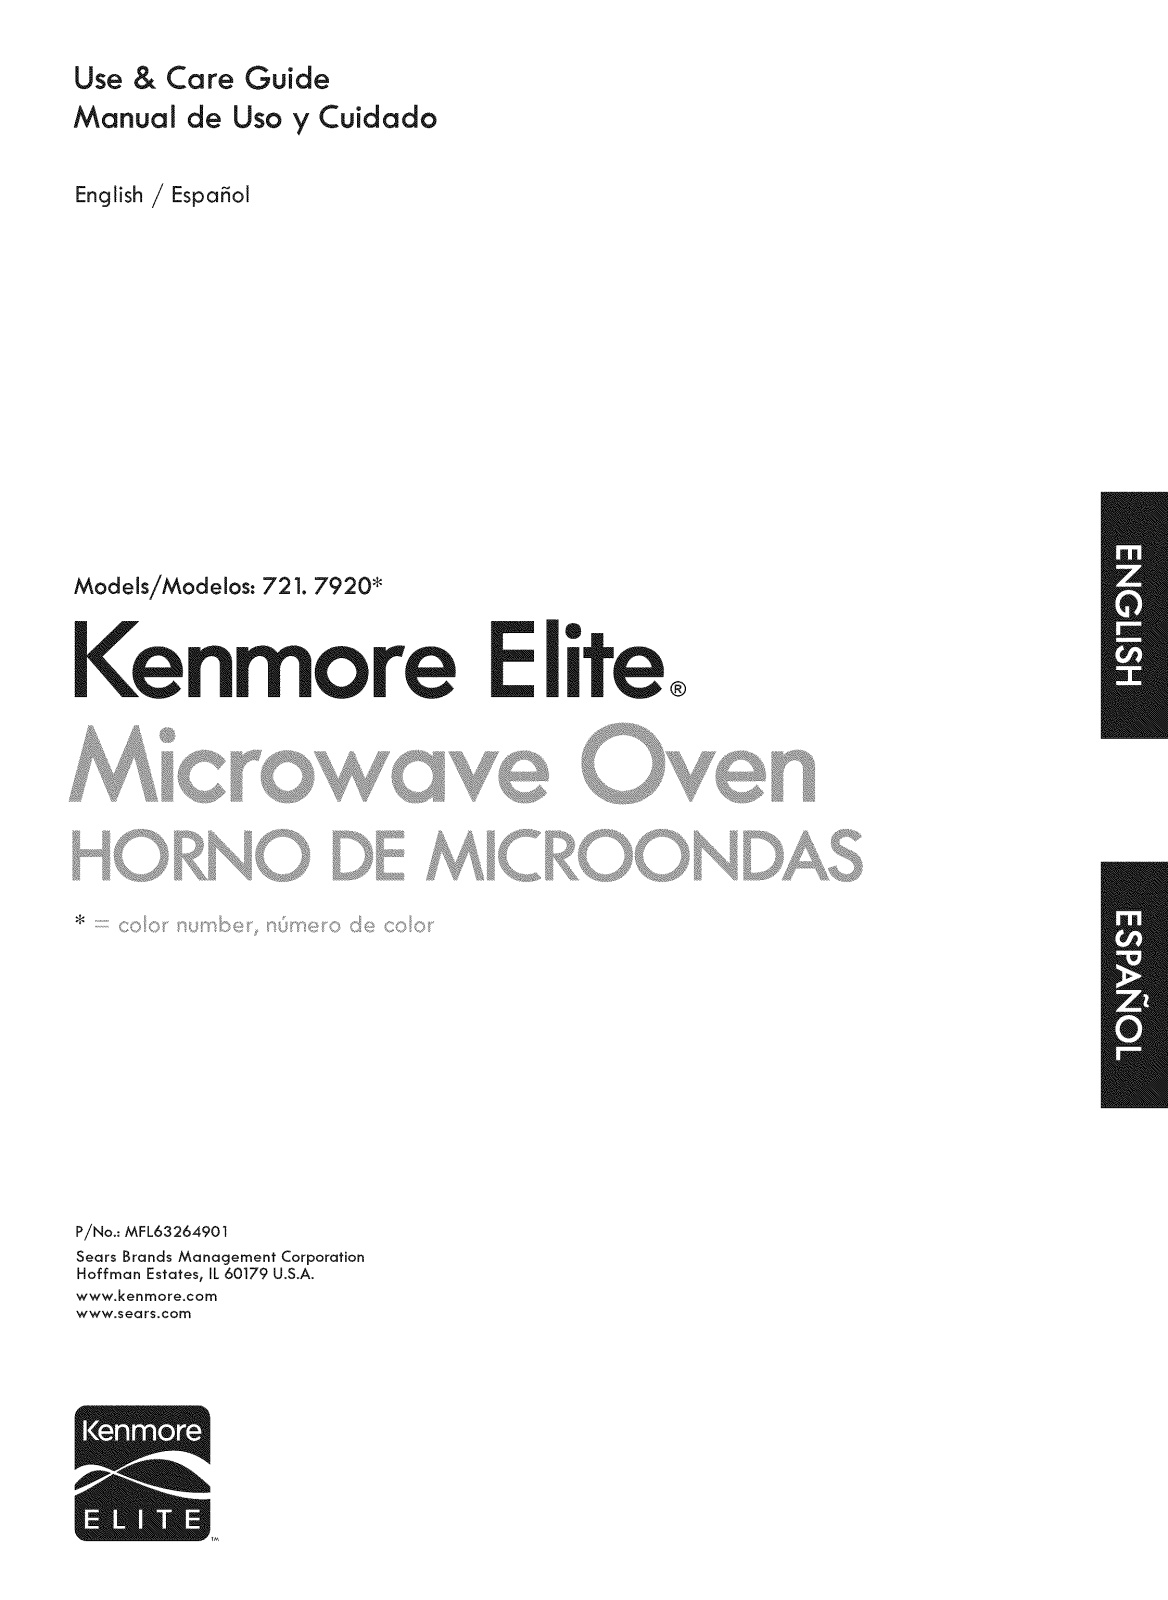 Kenmore Elite 721.79203010 User Manual